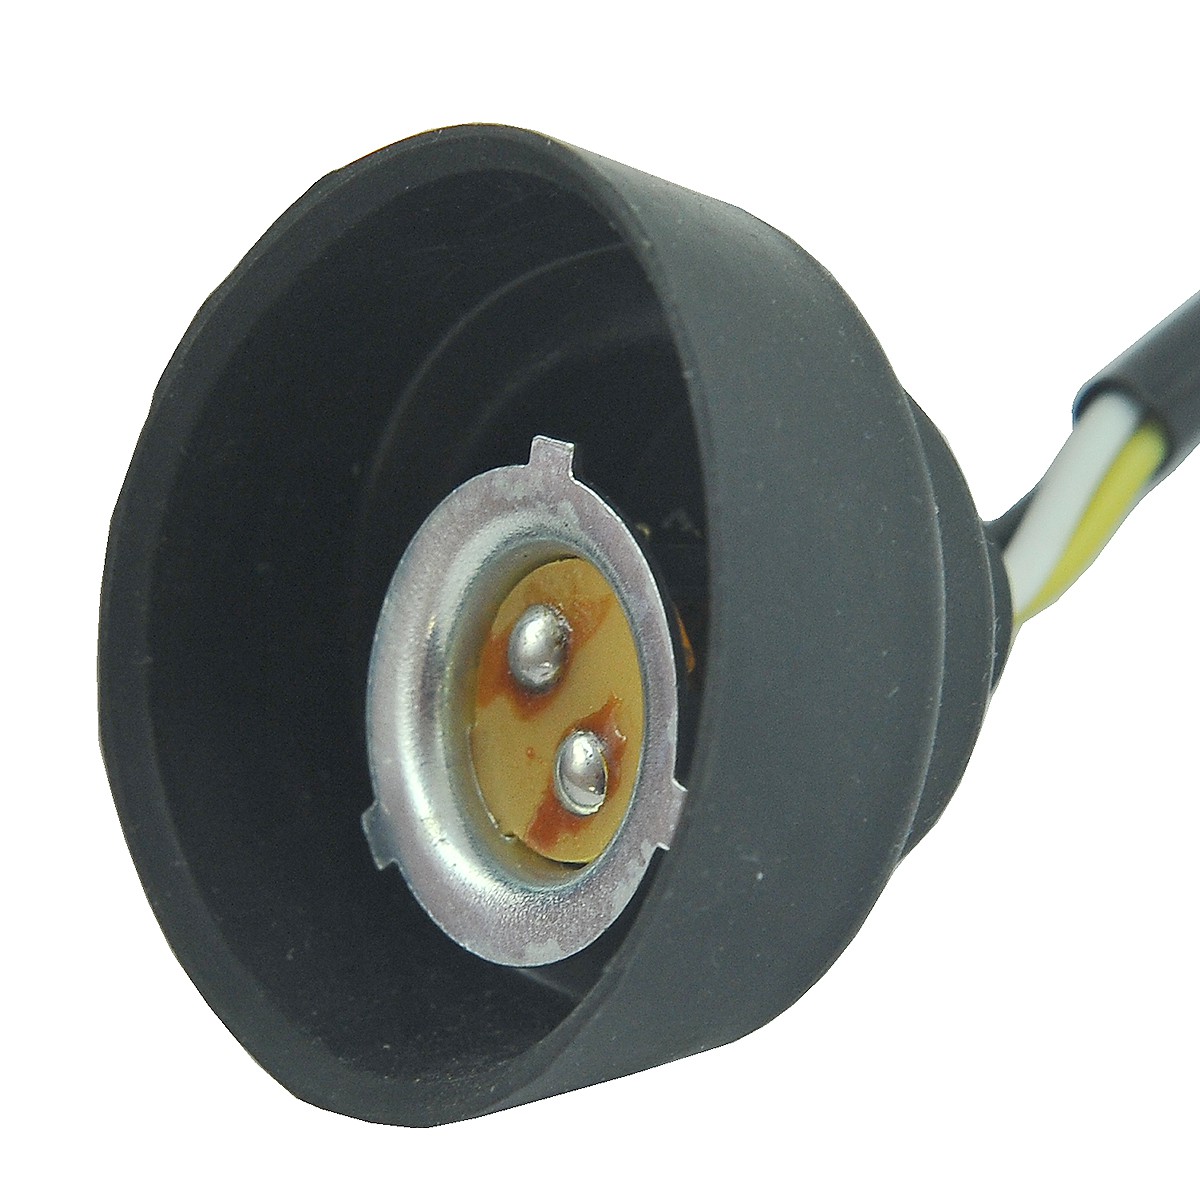 Bulb socket / Kubota L3608/L4708 / 99226-41002 / 5-07-121-05